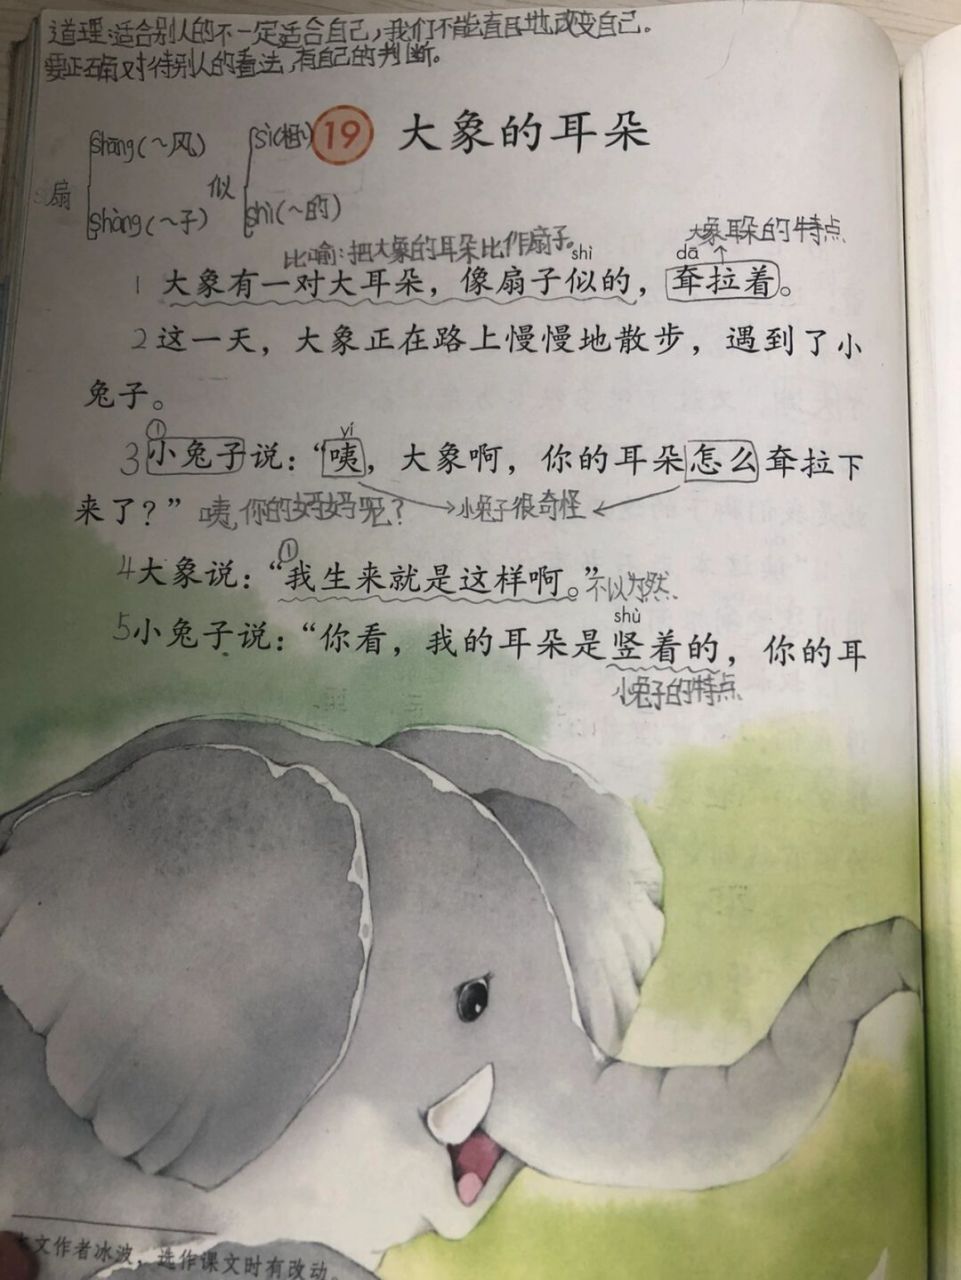 大象的耳朵笔记课文图片